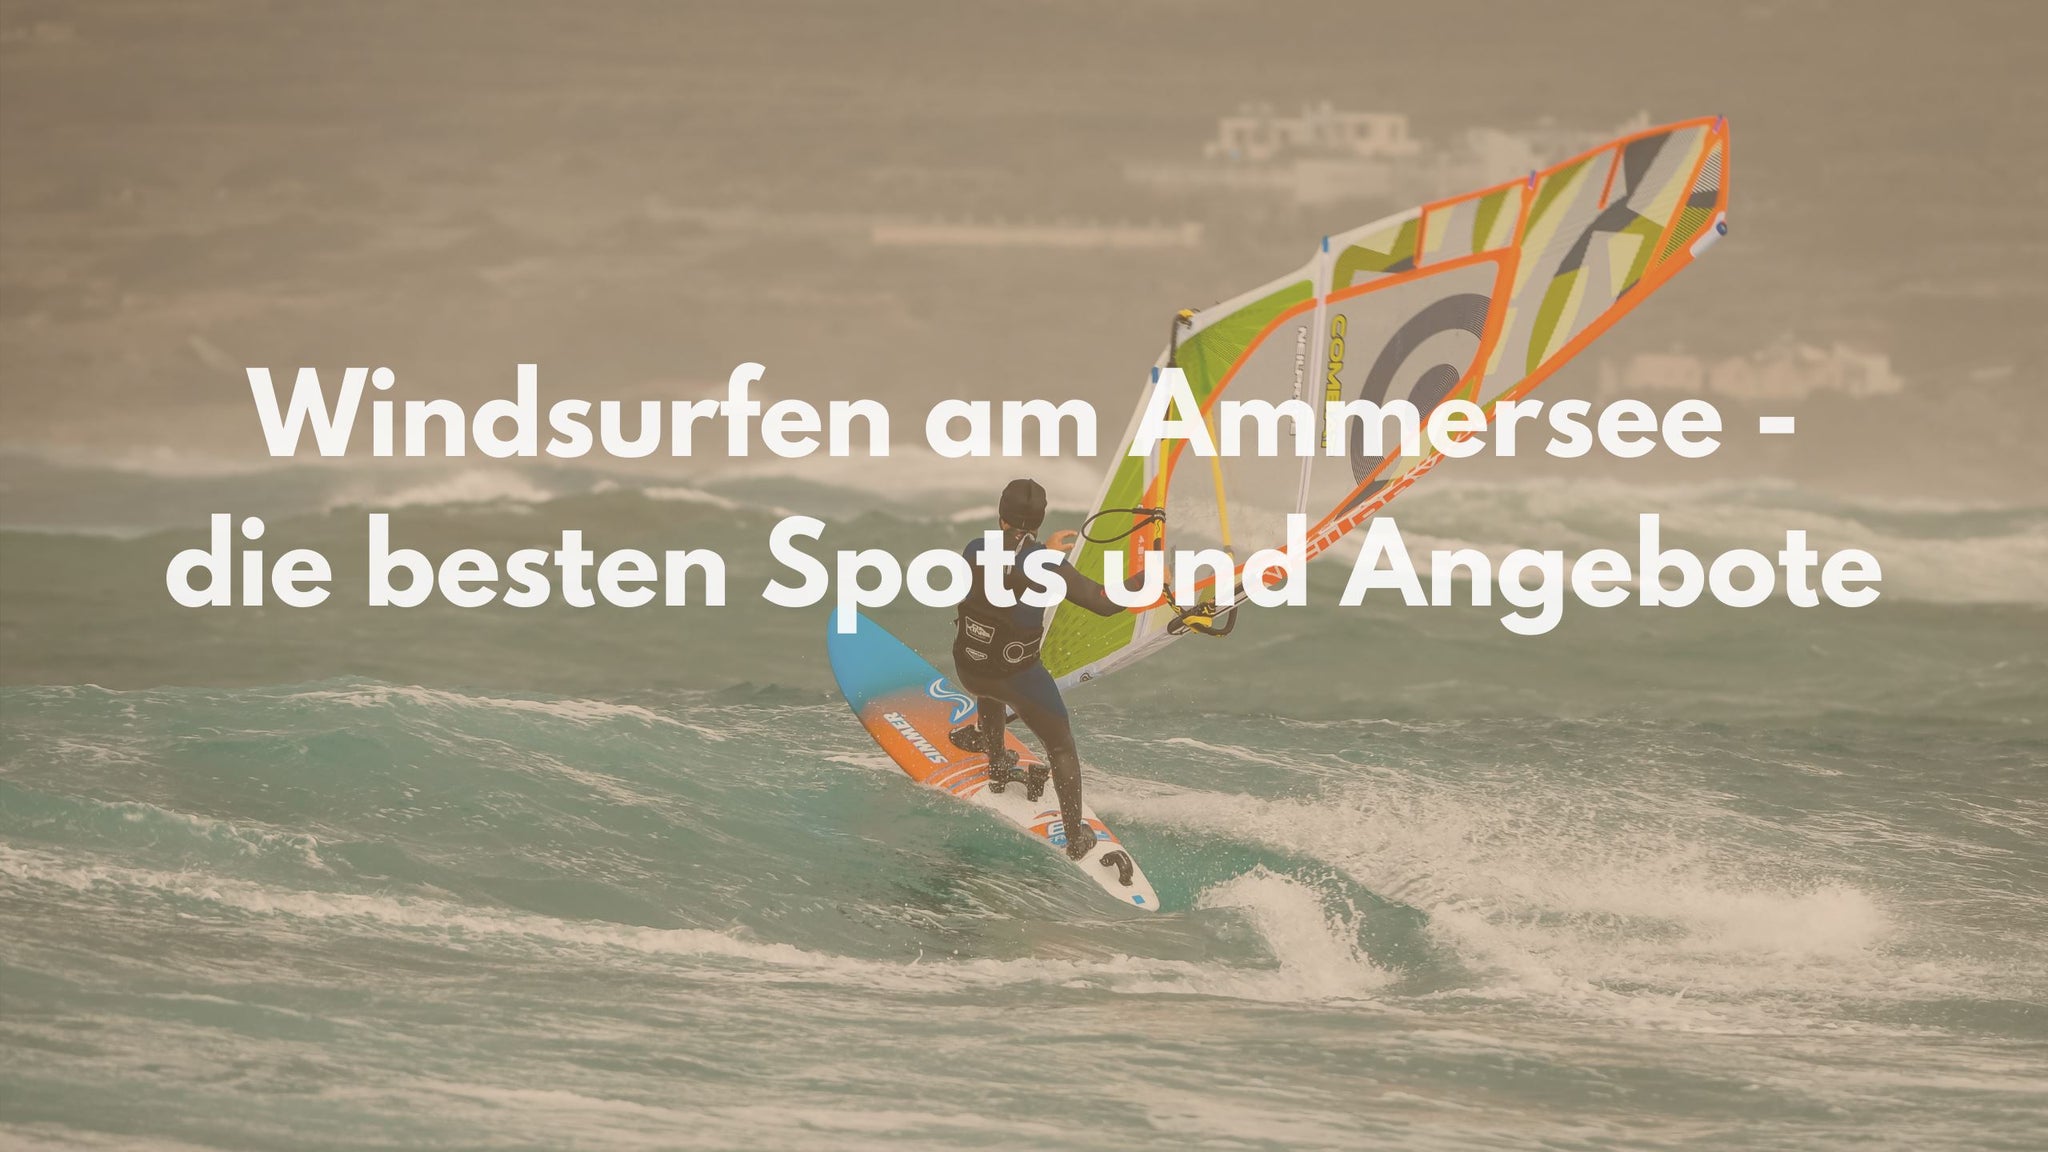 Windsurfen am Ammersee - die besten Spots und Angebote